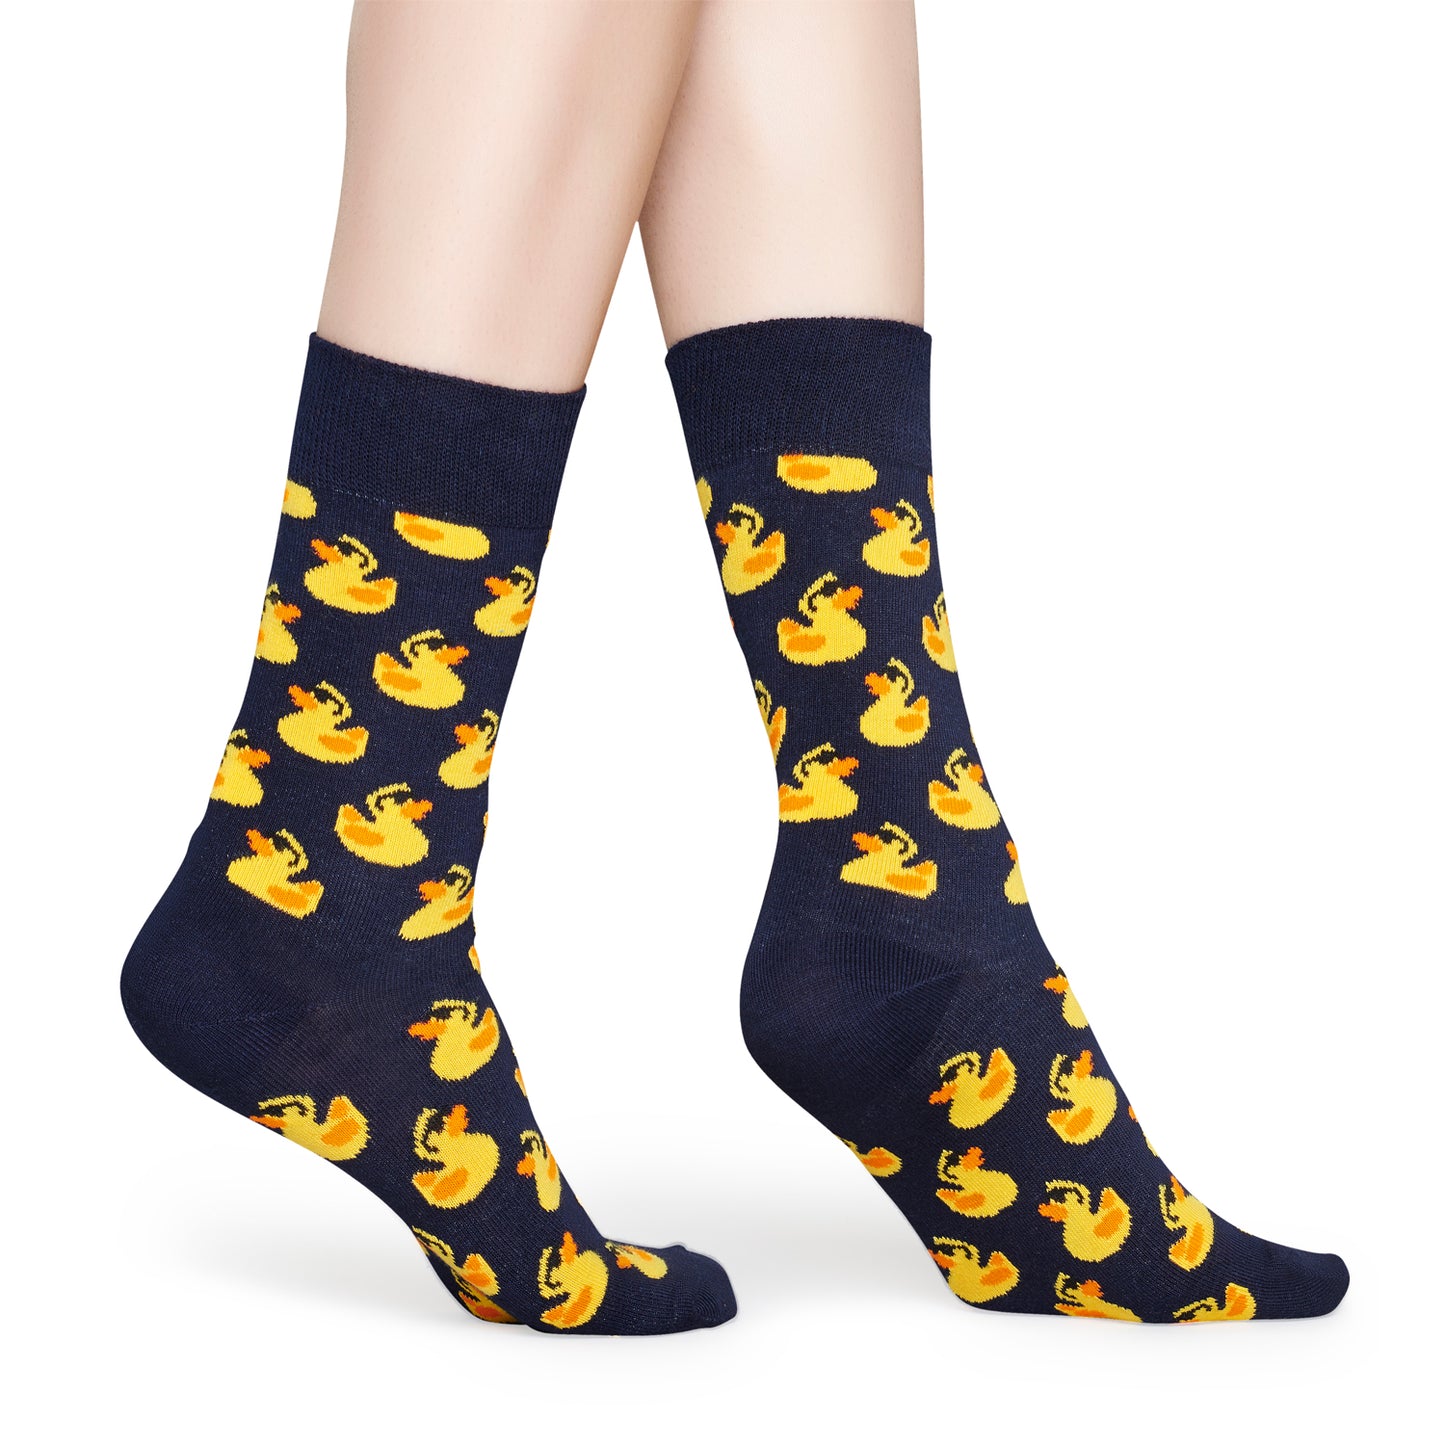 Happy Socks Women's Crew Socks - Rubber Duck